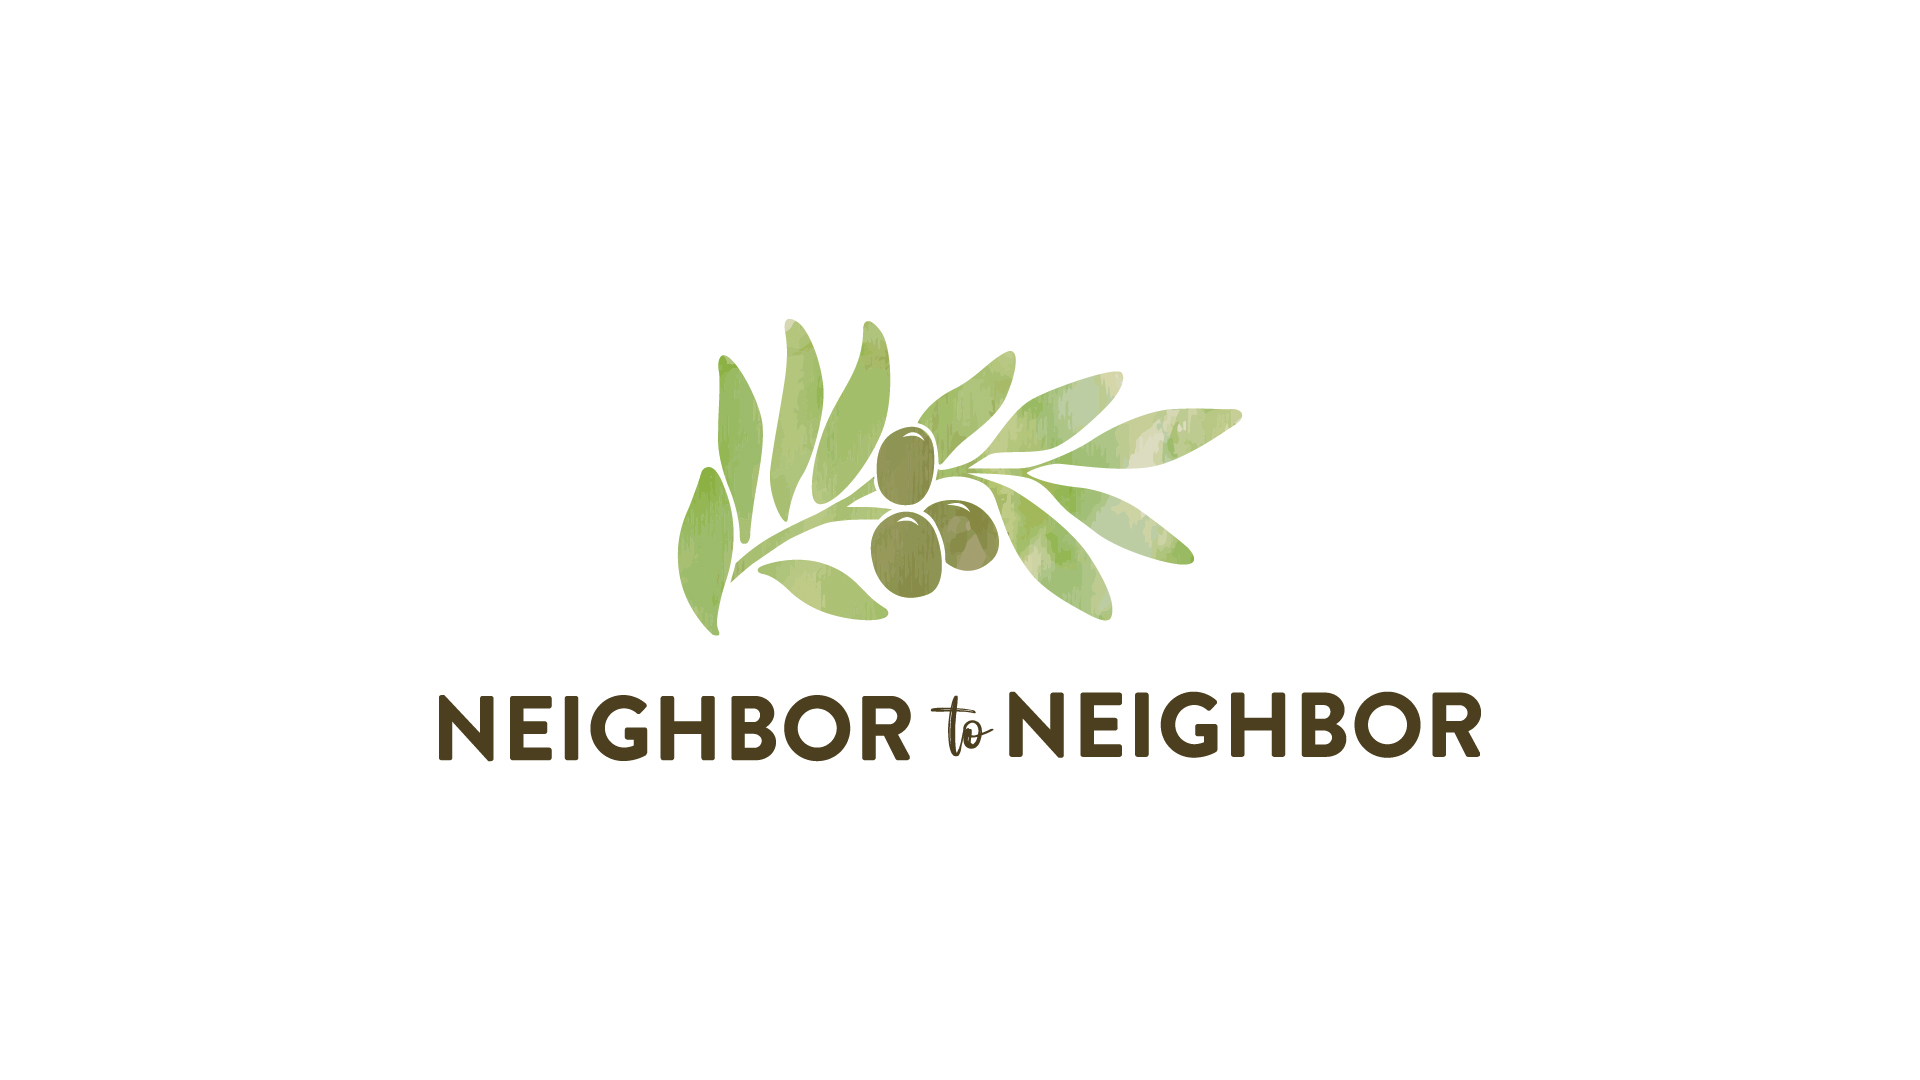 Neighbor to Neighbor